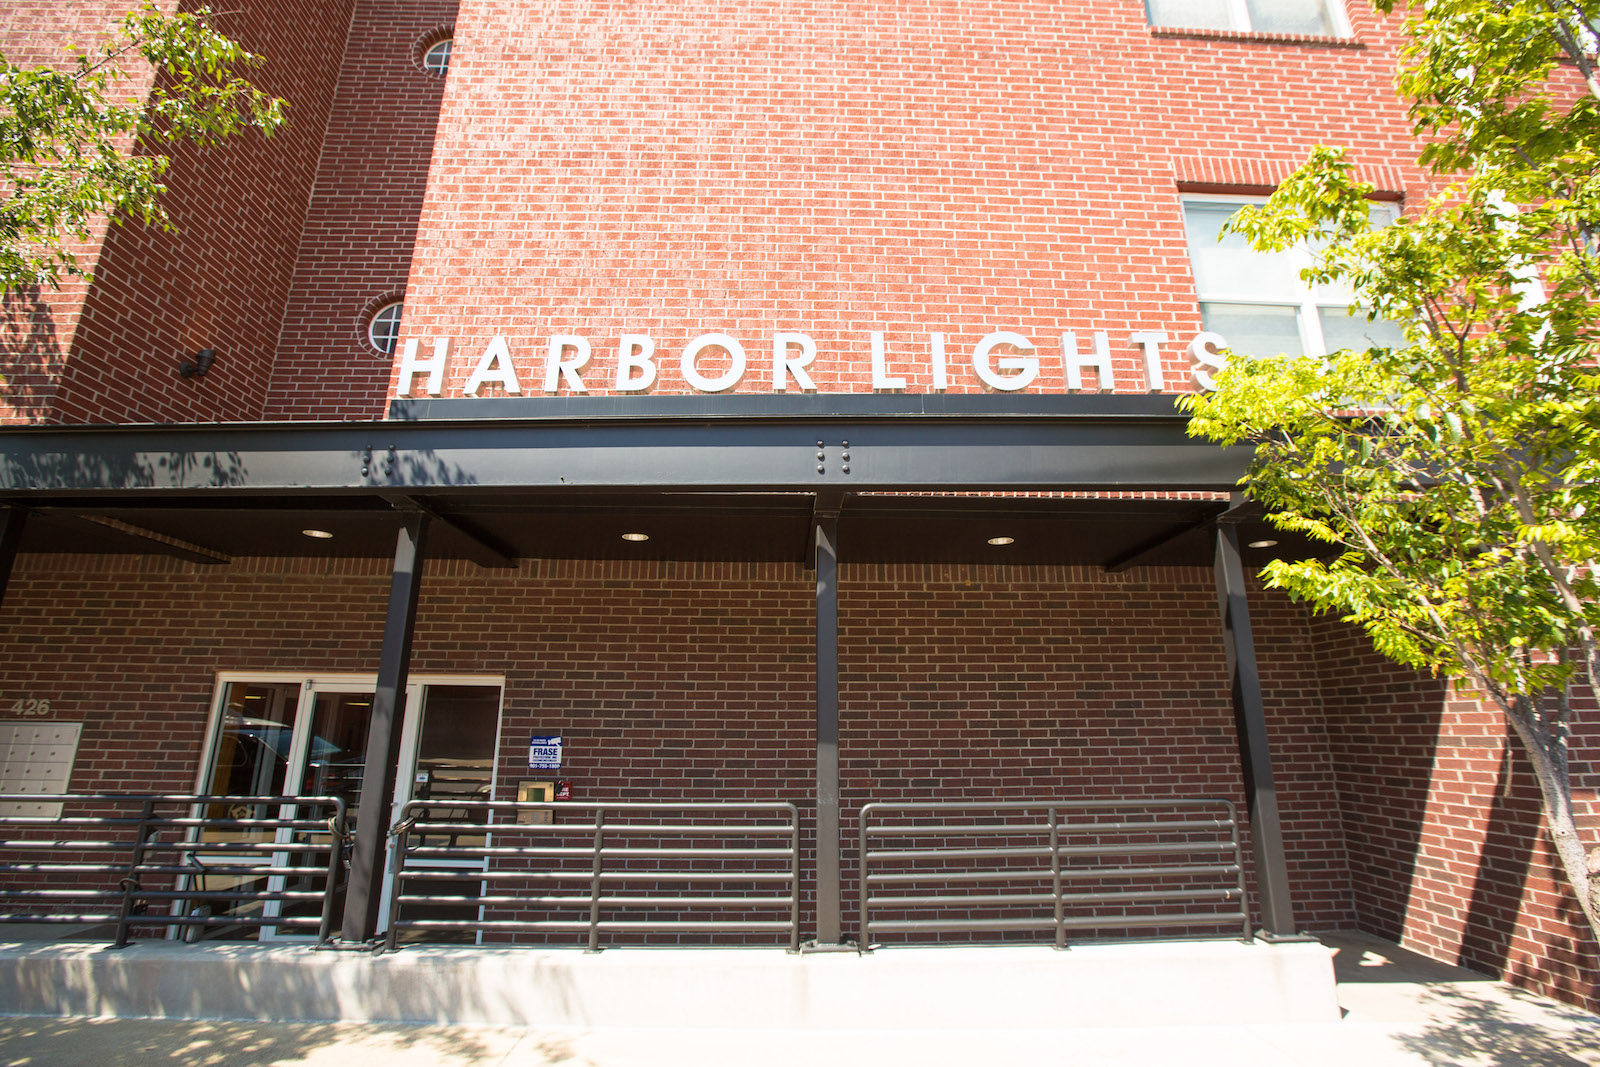 harbor lights entrance